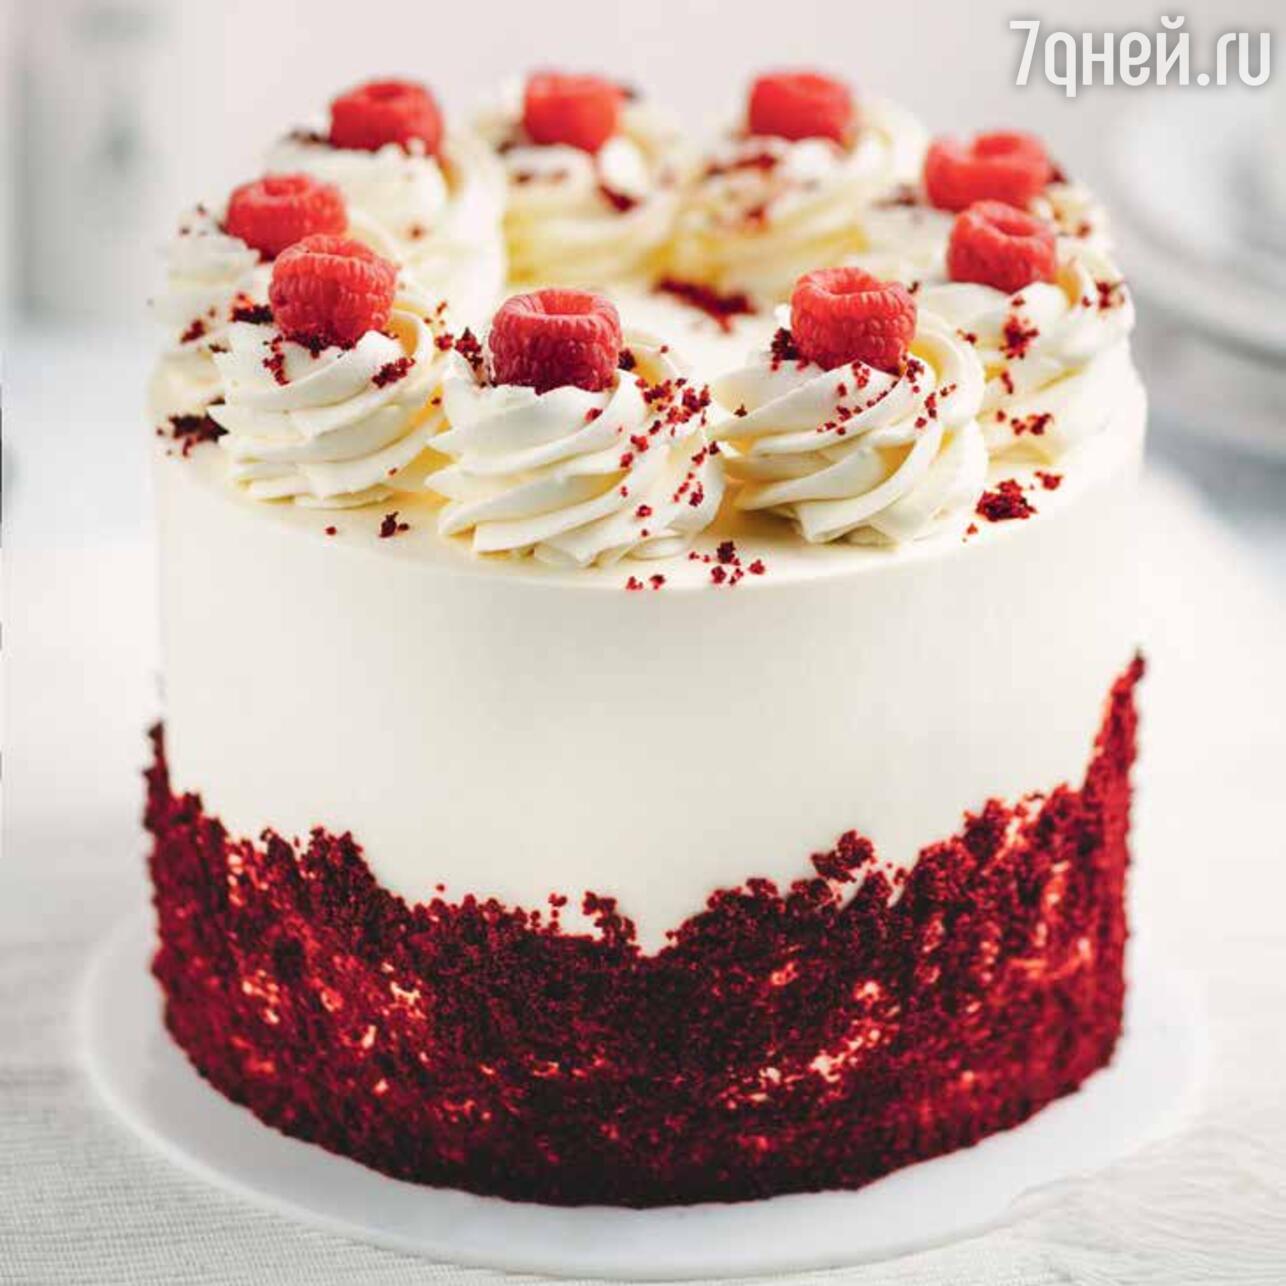 Торт Красный Бархат классический рецепт с фото пошагово